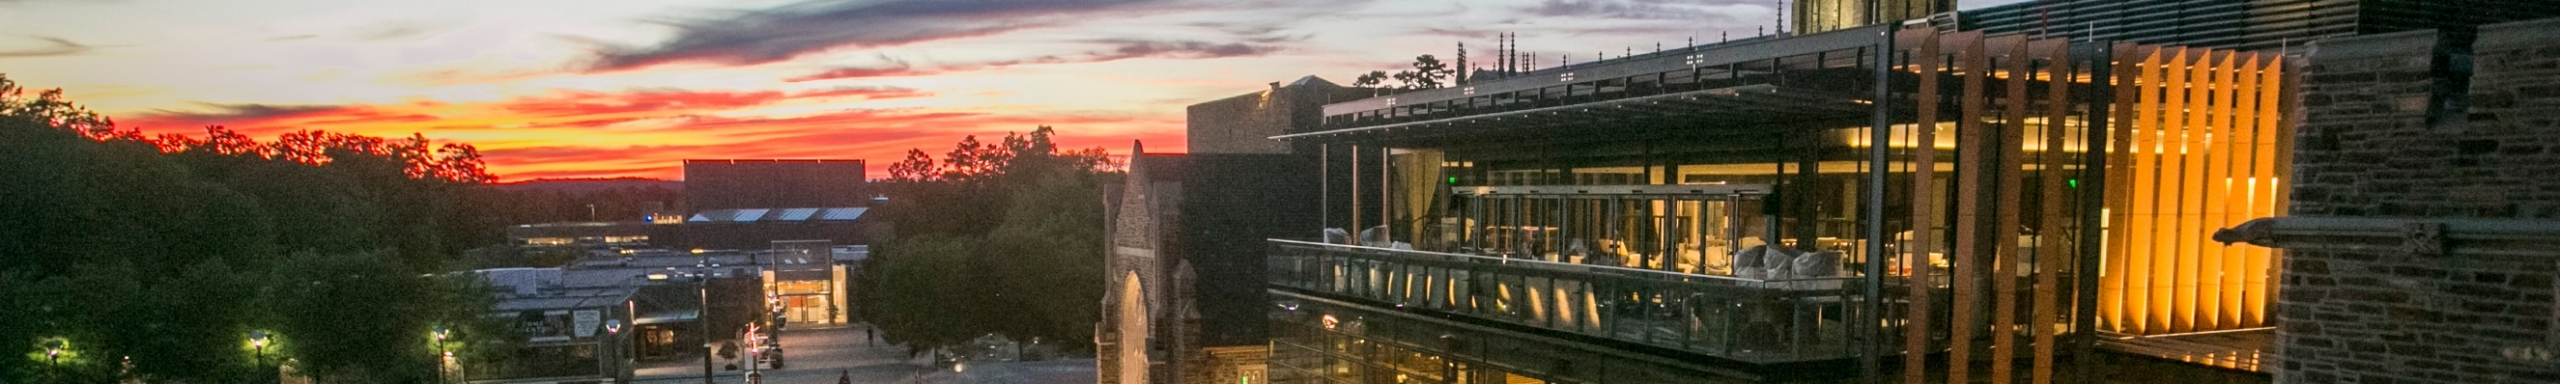 Duke University campus at twilight